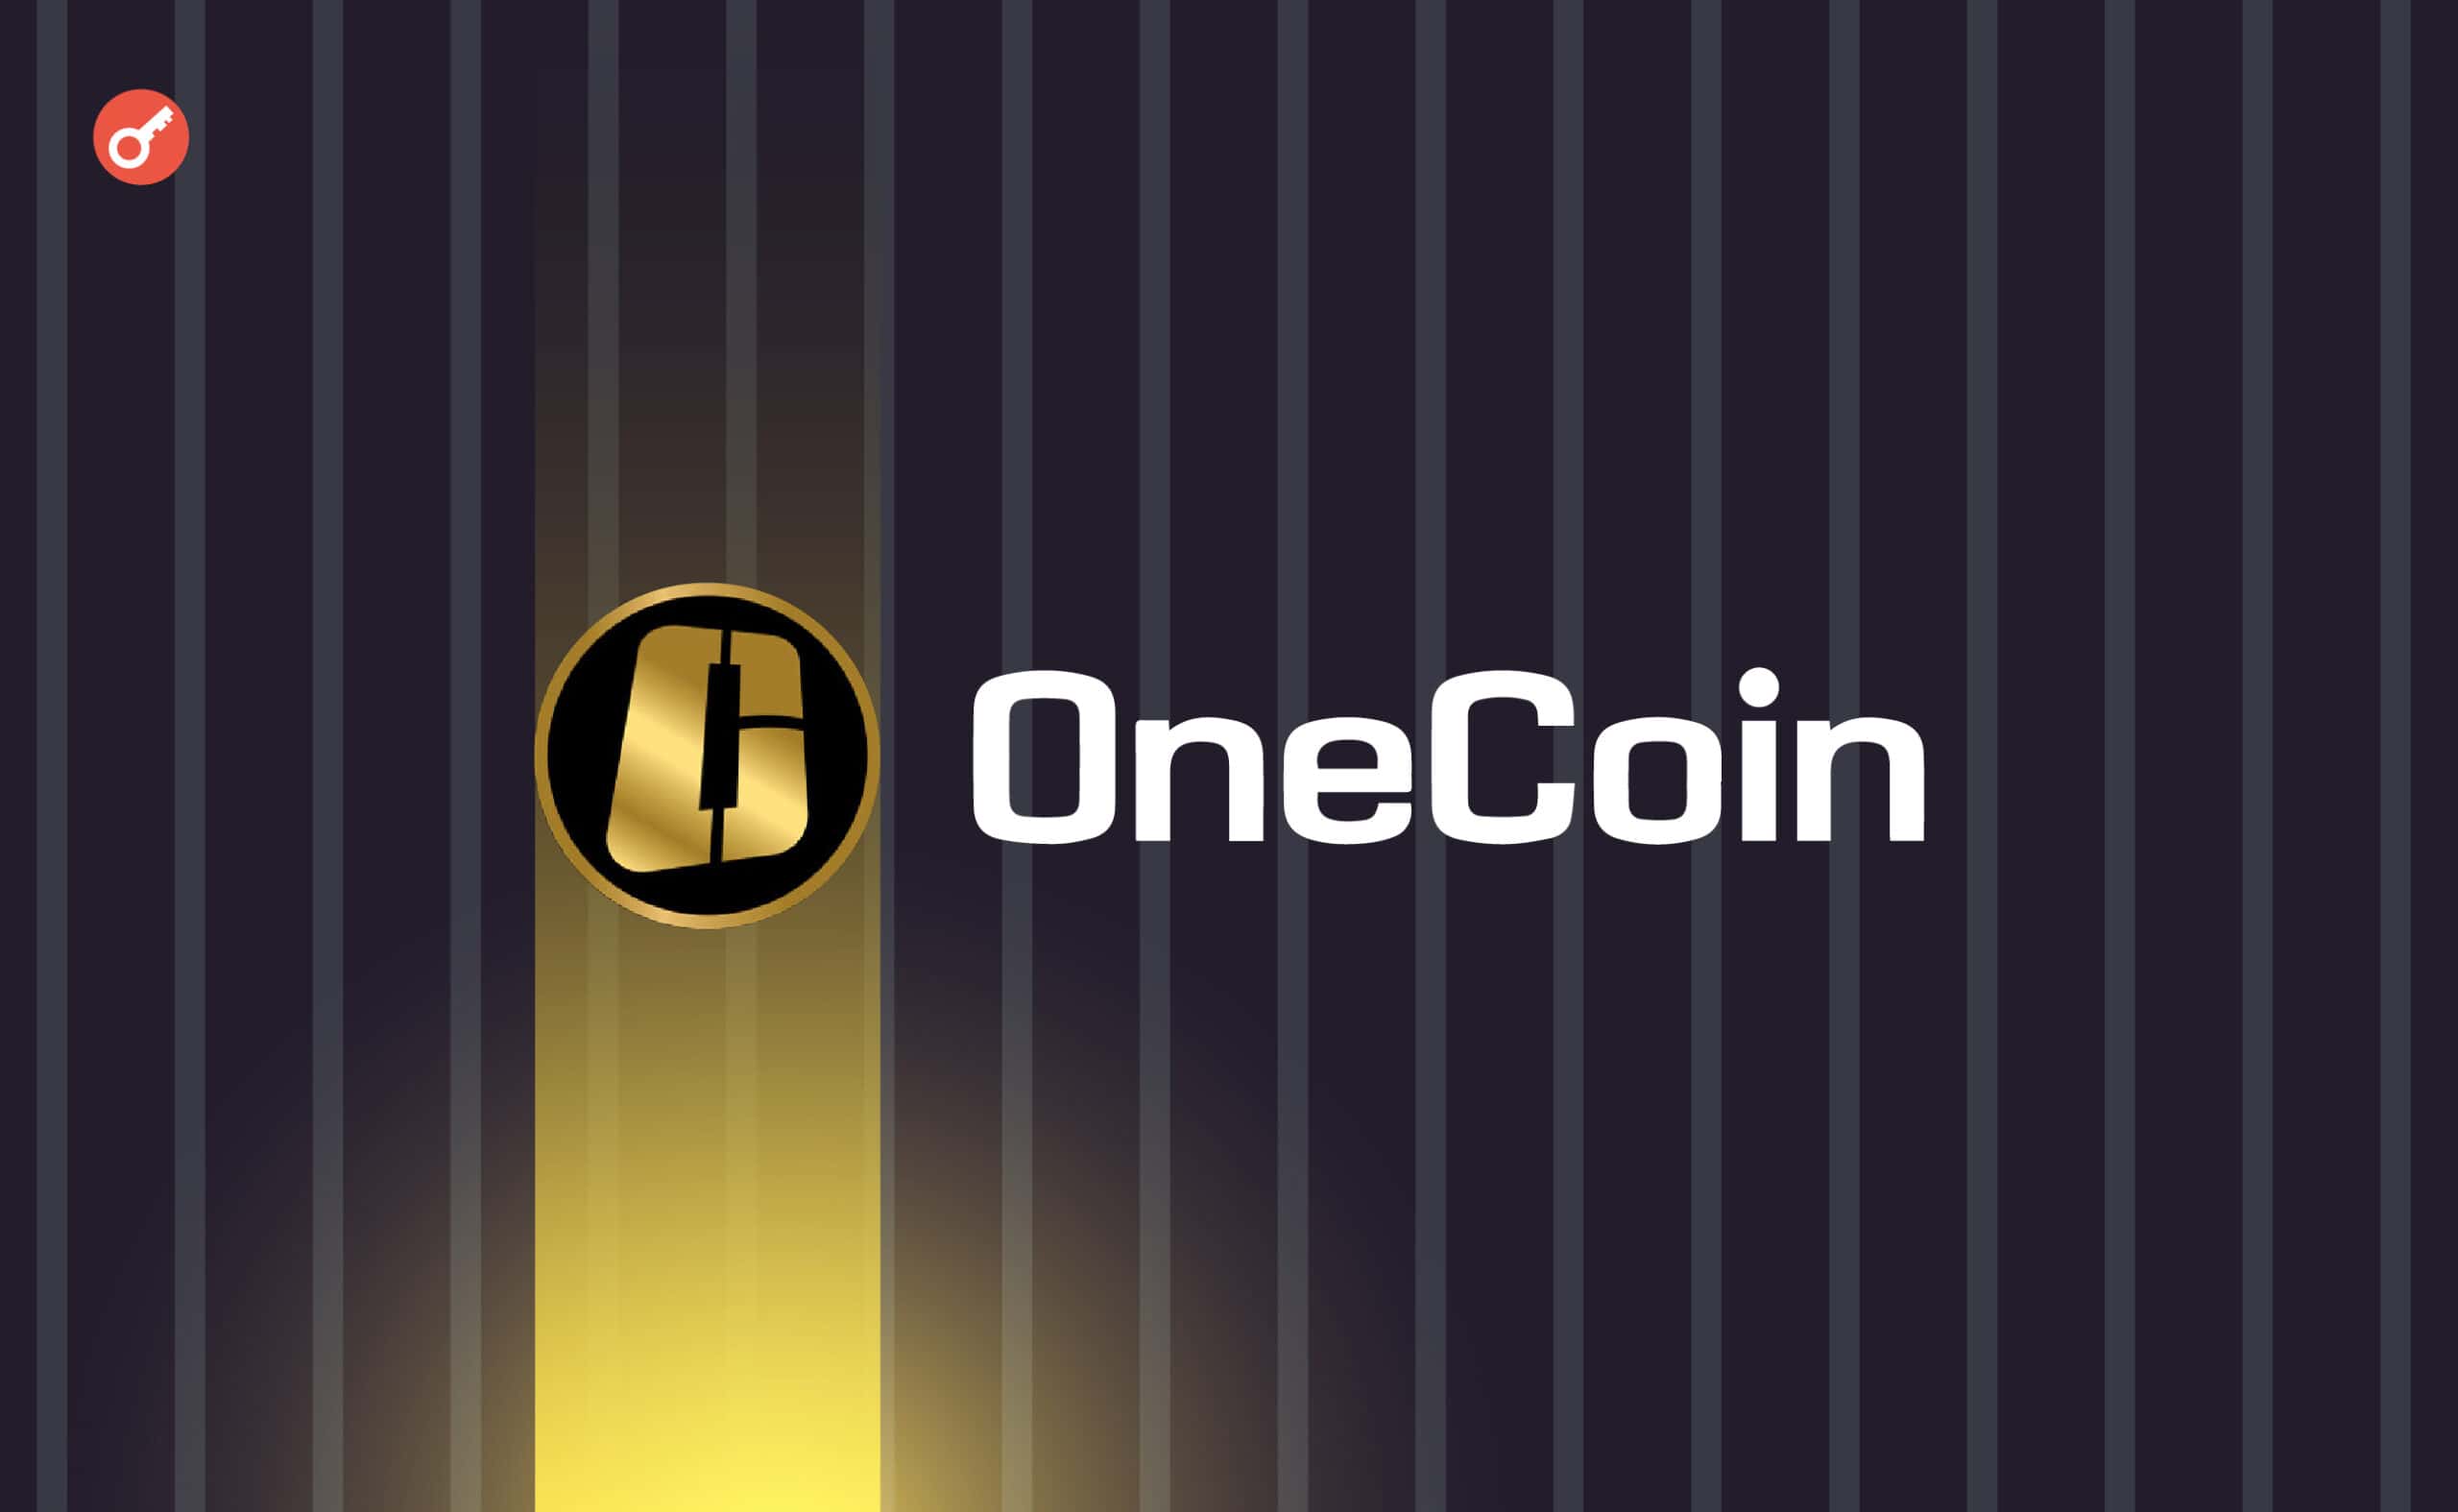 Один из ключевых фигурантов дела OneCoin вышел на свободу. Заглавный коллаж новости.